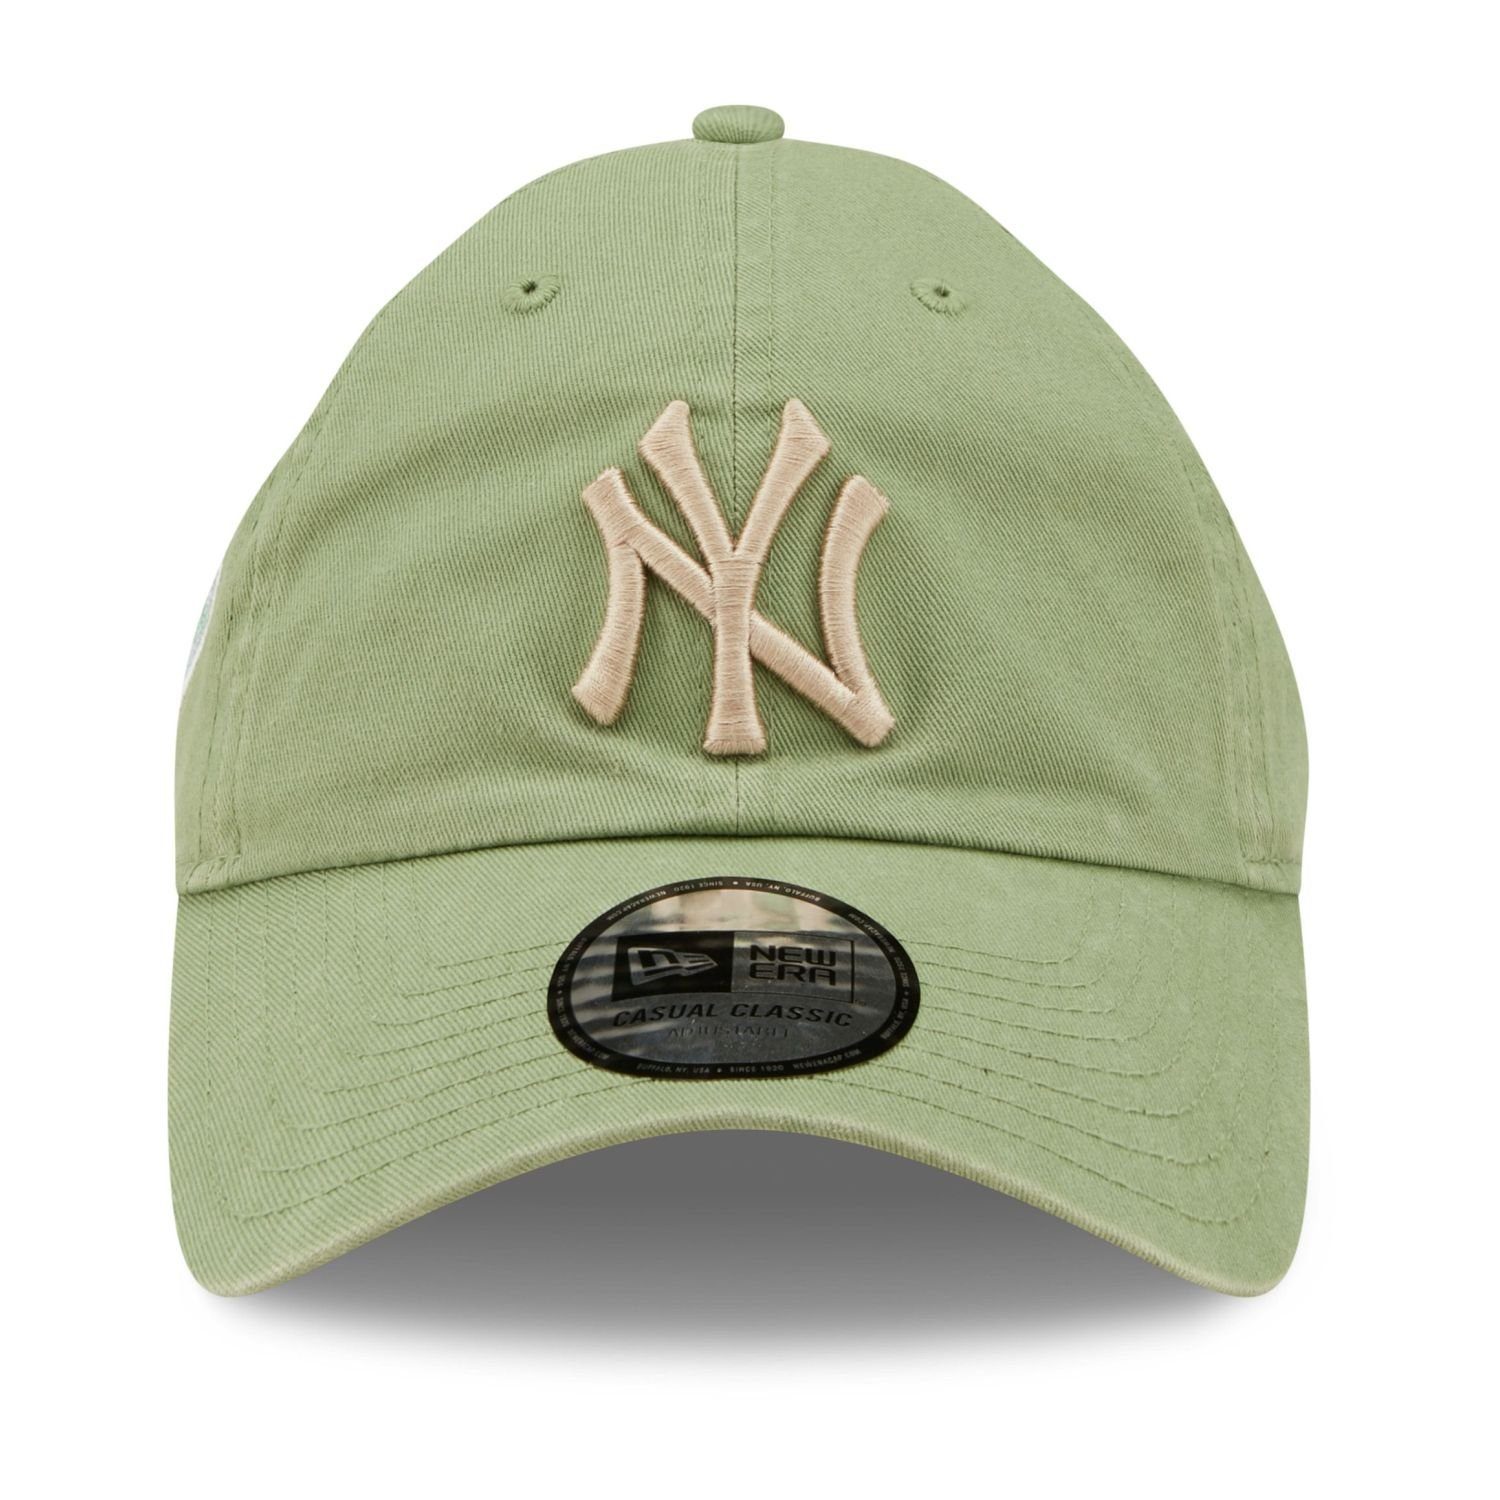 Casual Classics Era New Baseball jade New York Yankees Cap